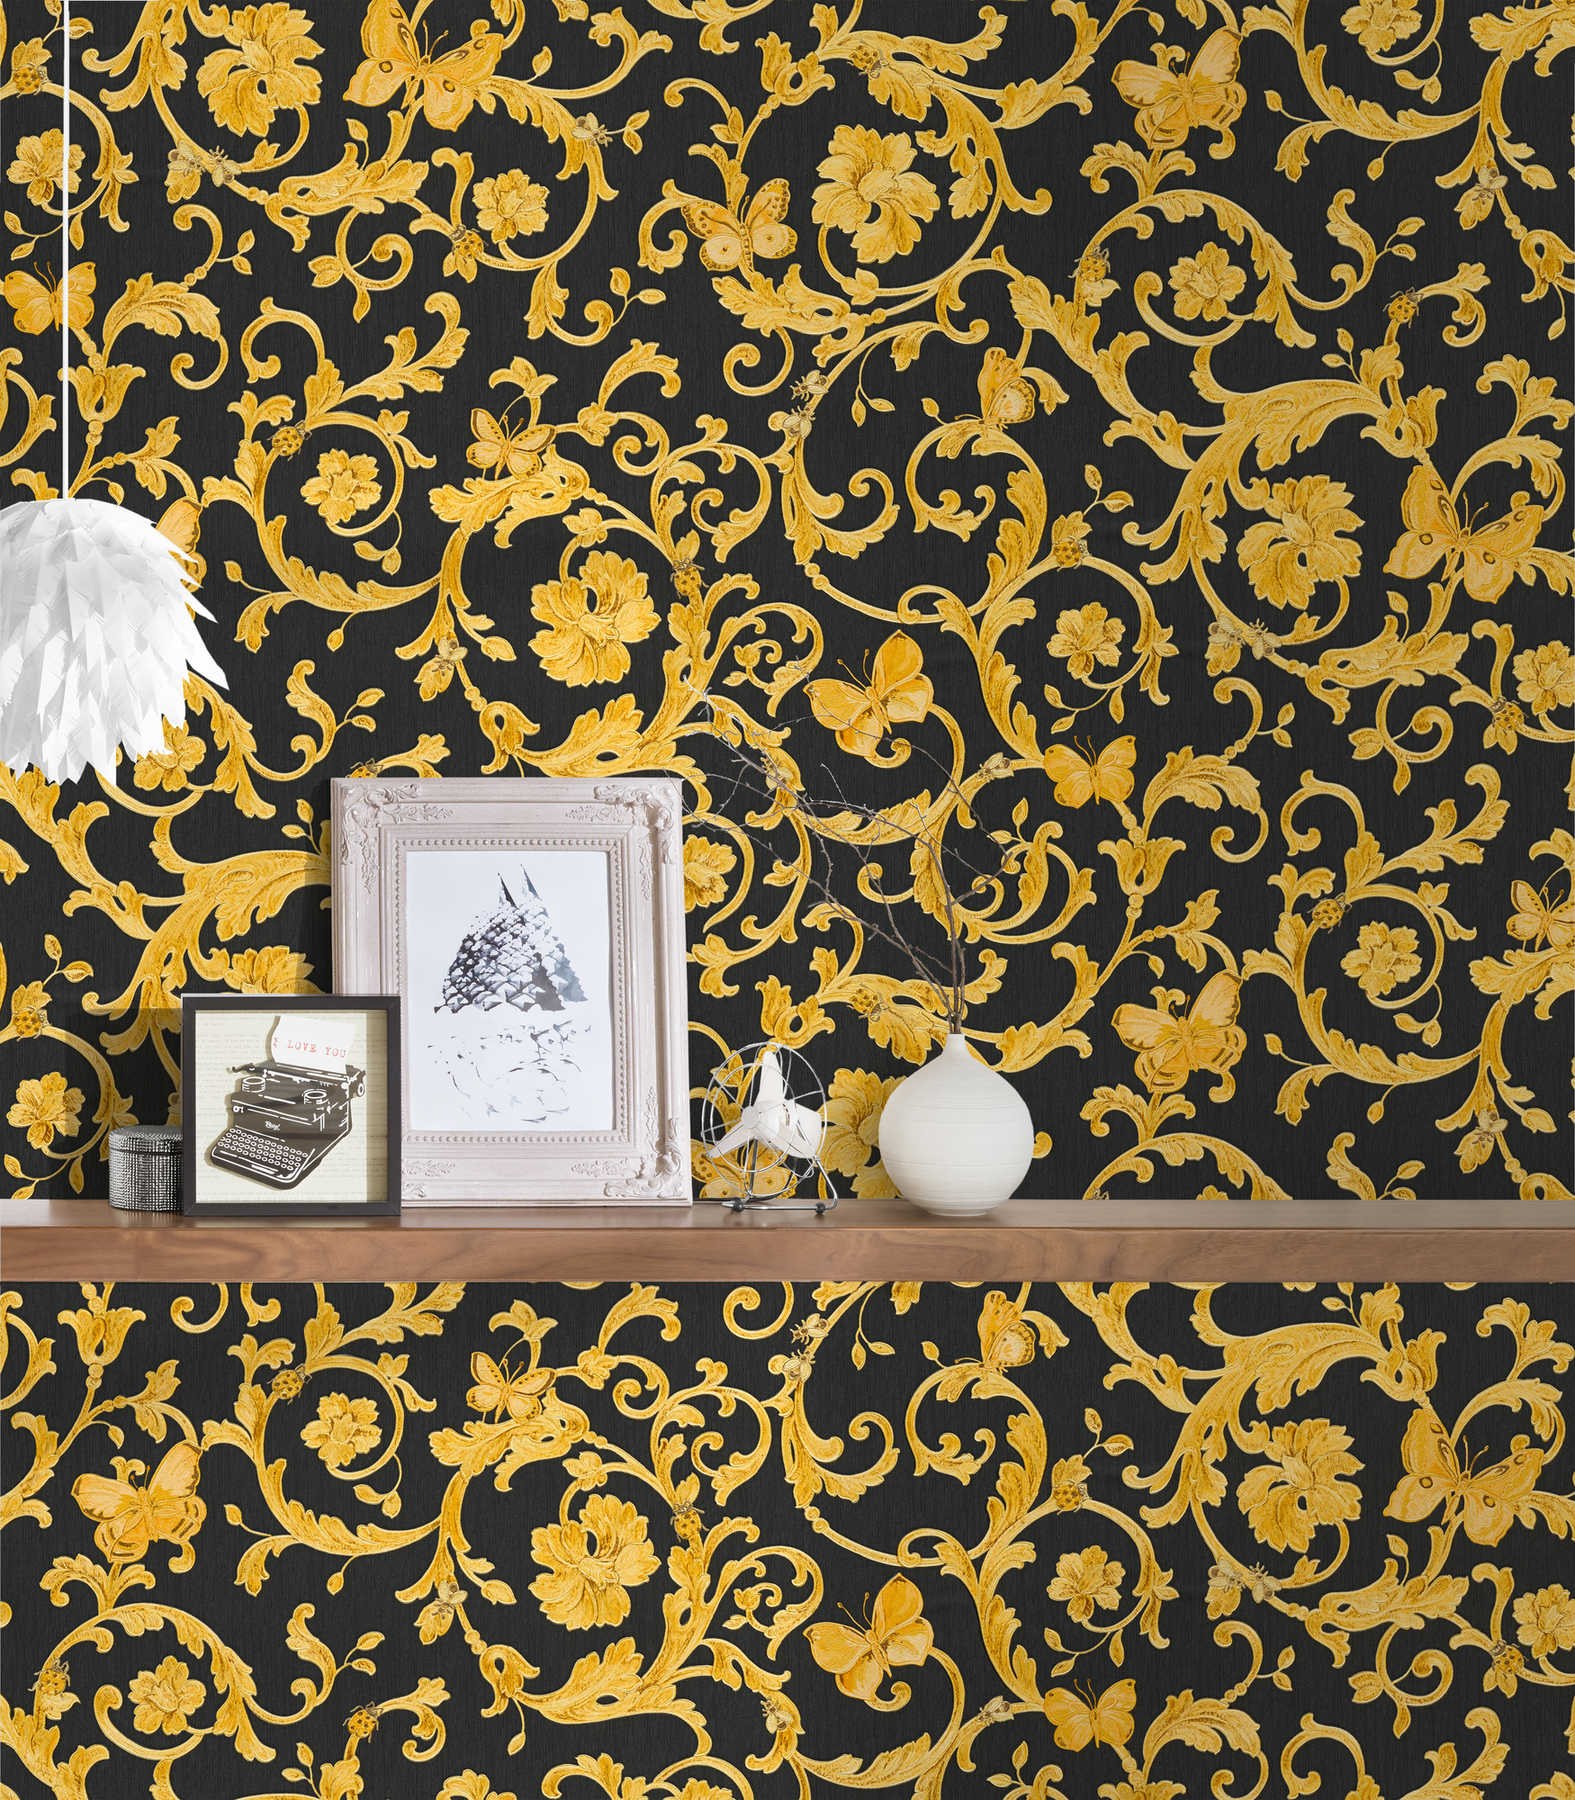             Zwart VERSACE behang met gouden ornamenten & vlinder
        